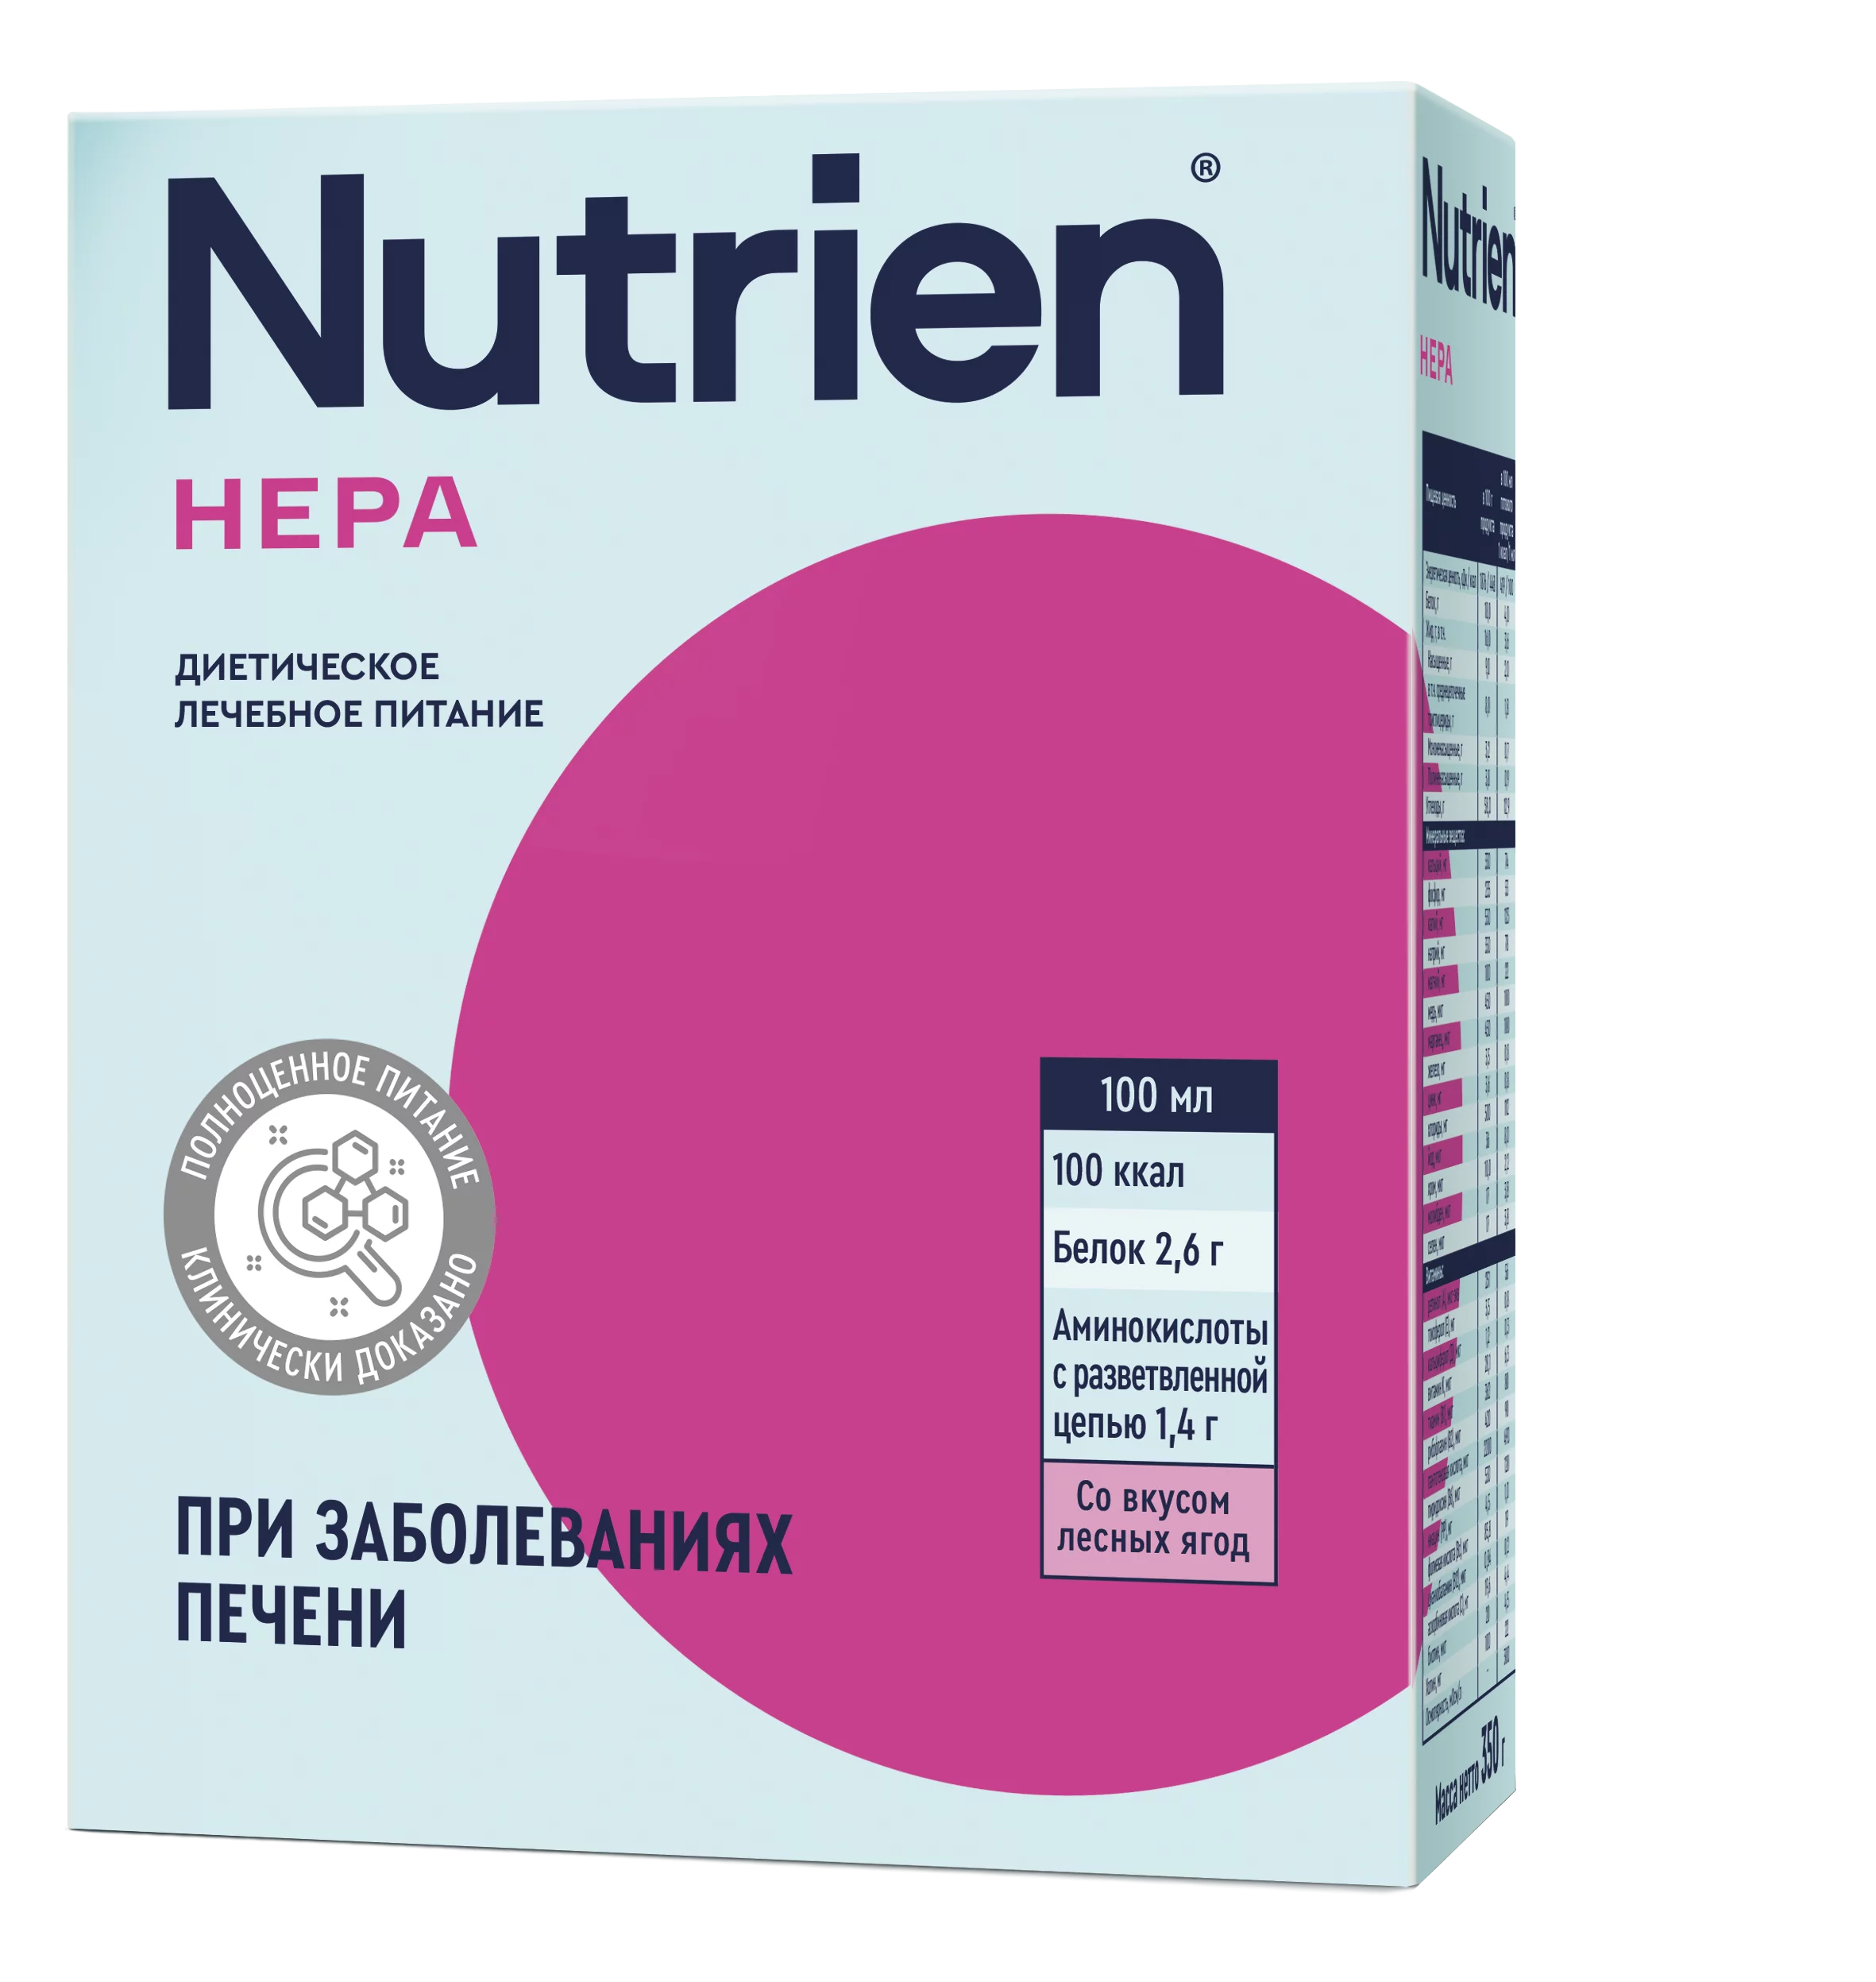 Nutrien Hepa - 7